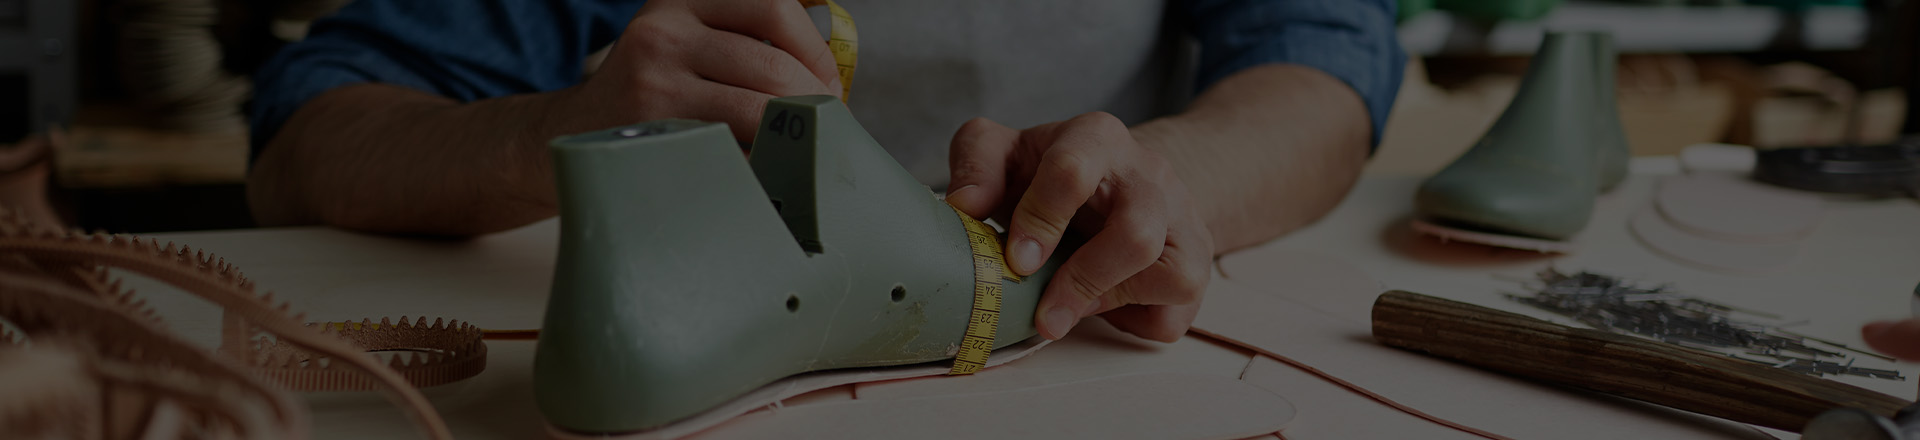 Работа с 1С:УНФ: Автоматизируем этапы выполнения заказов на обувном предприятии